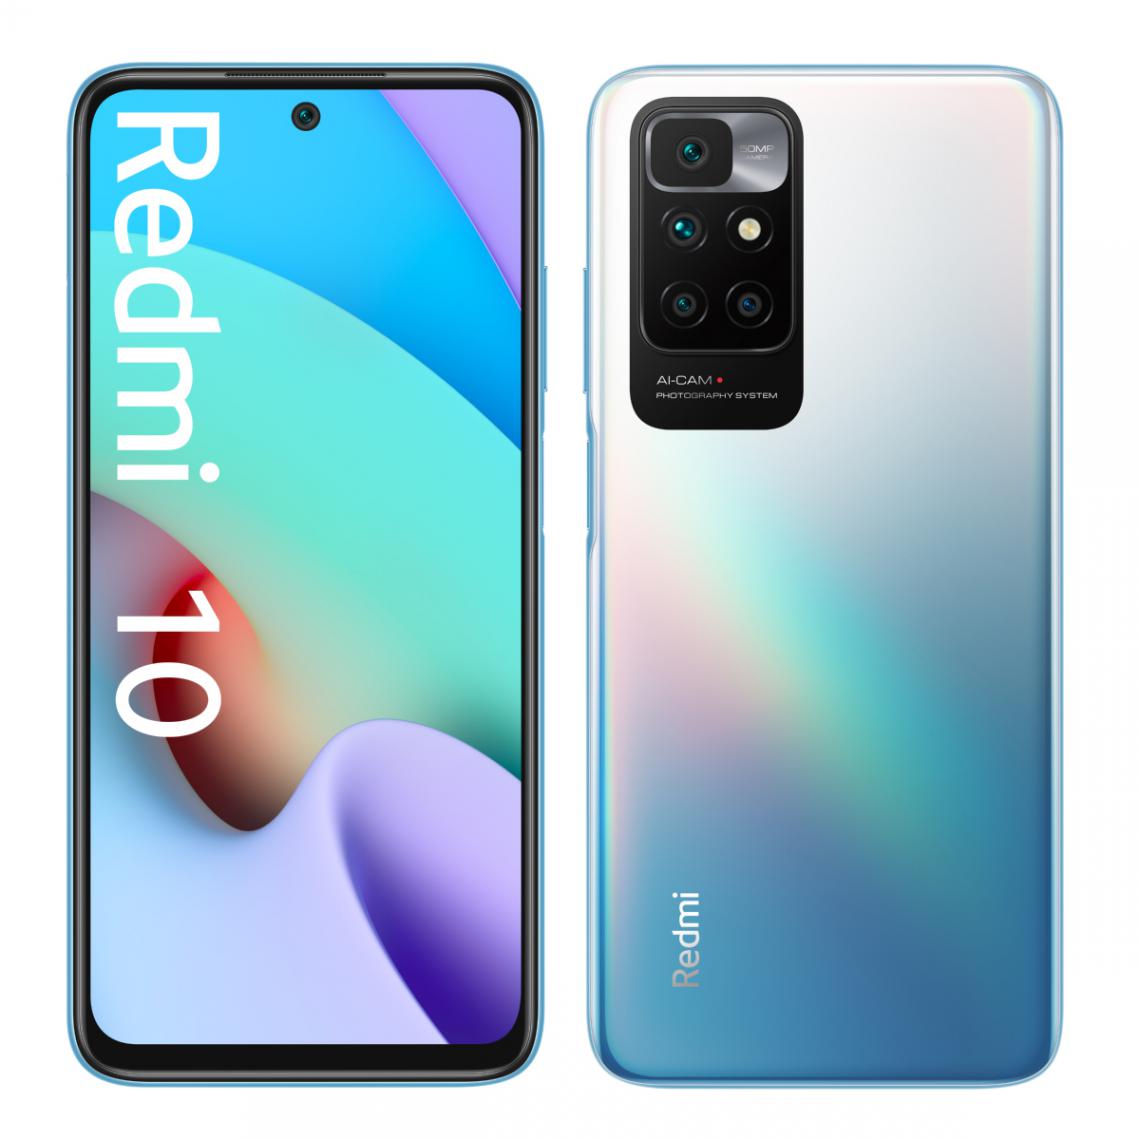 XIAOMI - Redmi 10 - 64Go - Bleu - Smartphone Android